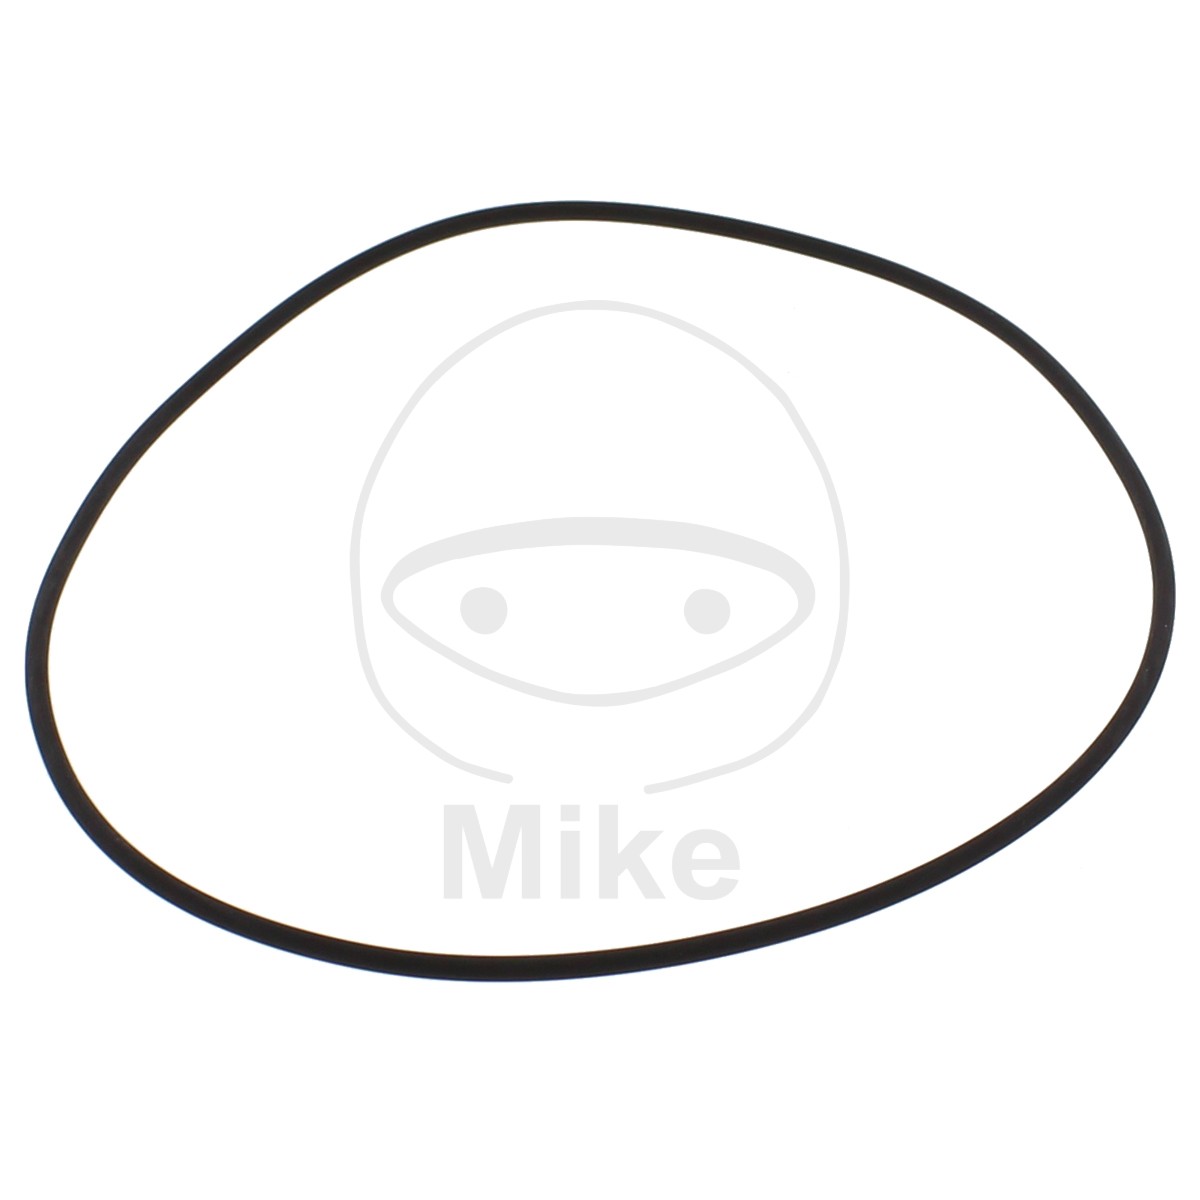 Obrázek produktu Těsnění ventilového víka ATHENA M752603550004 O-kroužek 2.62X139.38 mm